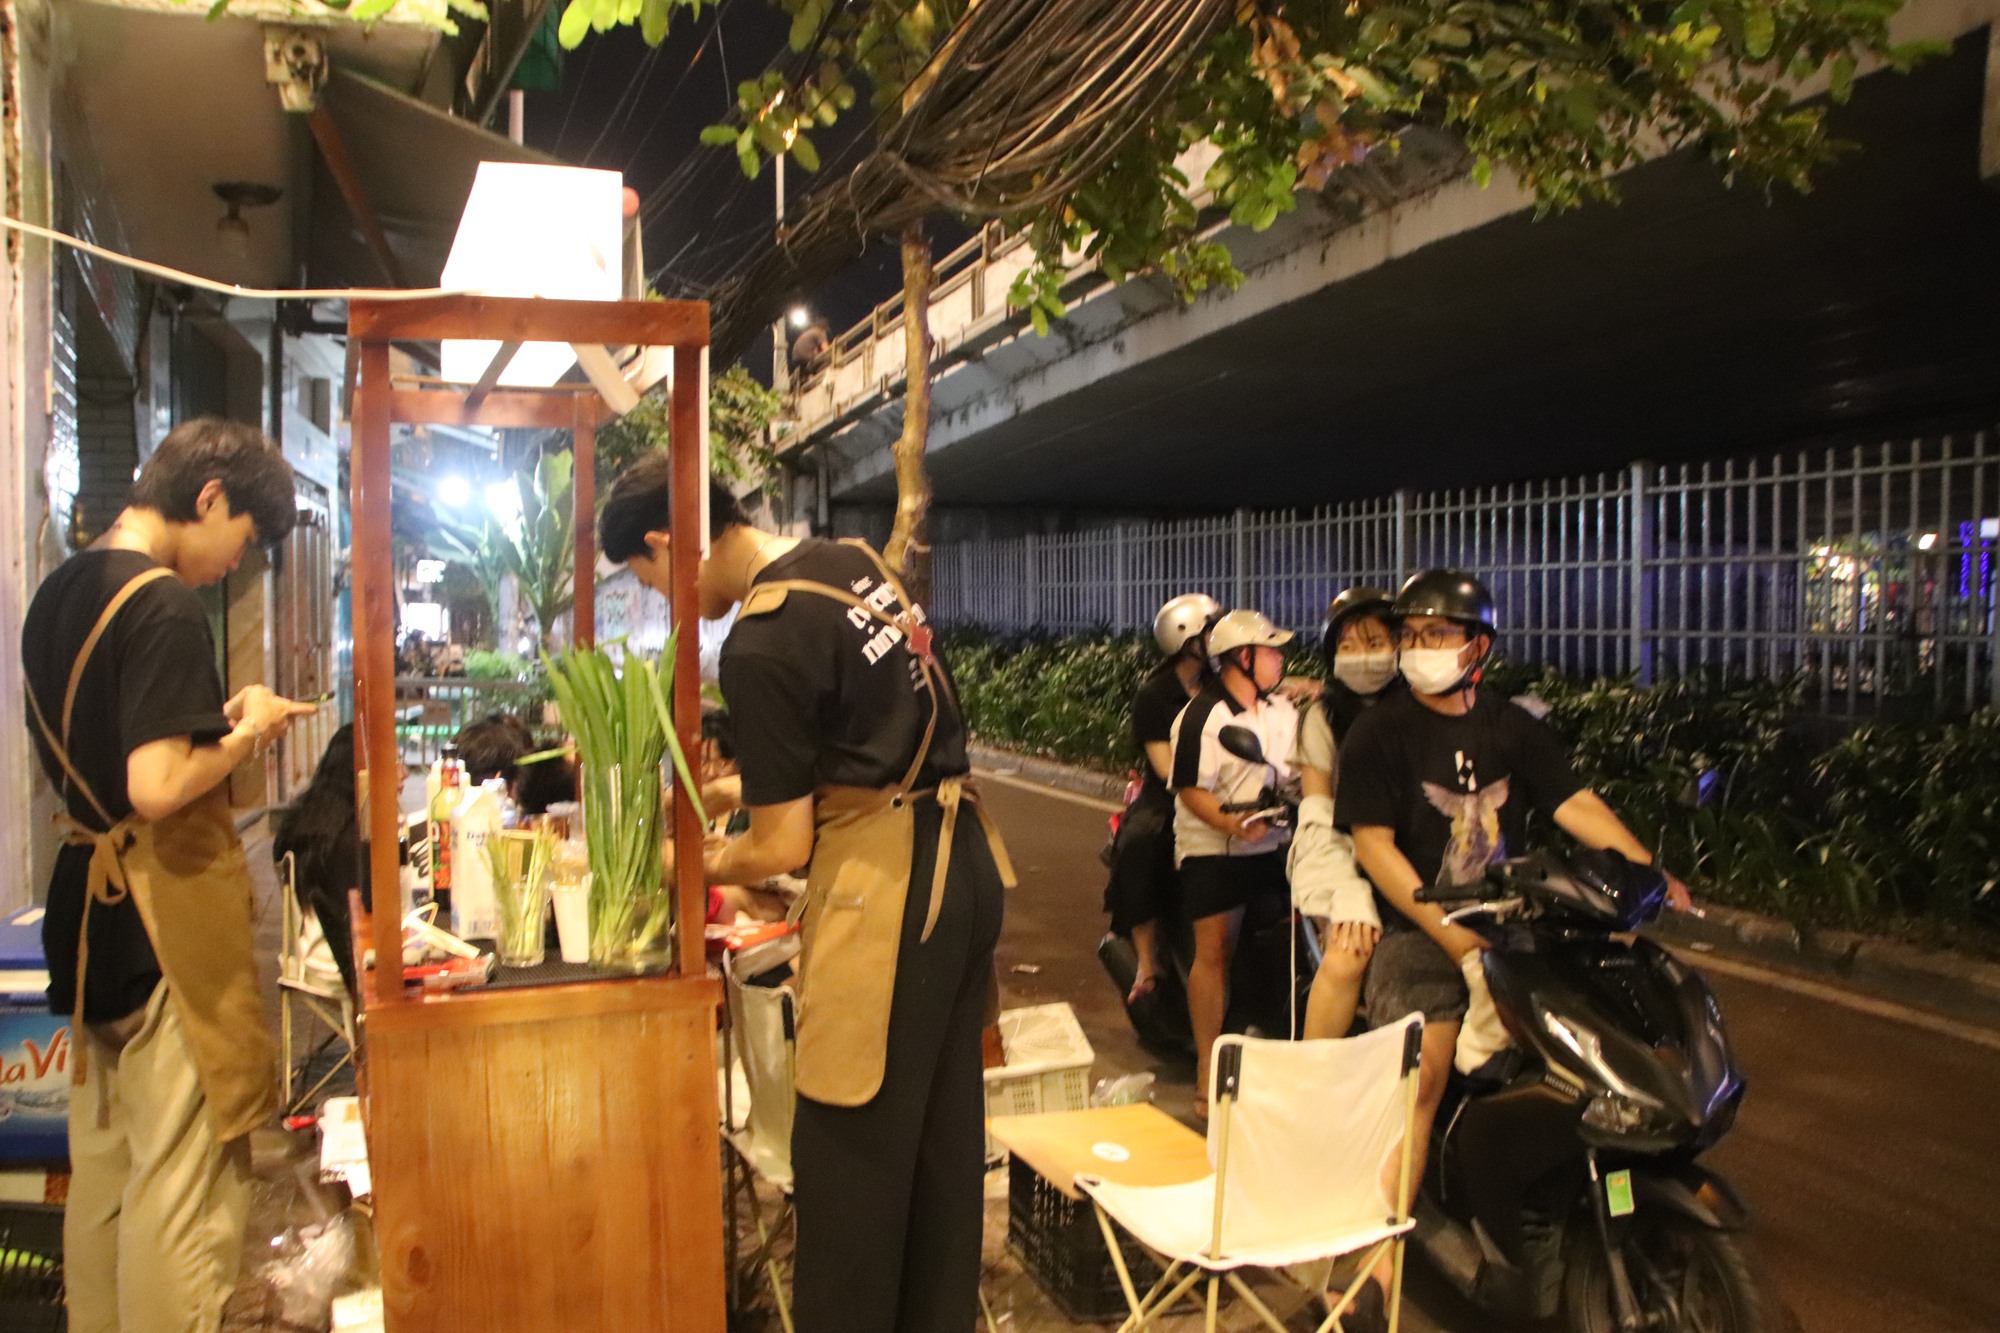 Bán cà phê đựng trong ống tre, mỗi ngày ông chủ GenZ ở Sài Gòn tất bật pha gần 250 ly  - Ảnh 5.